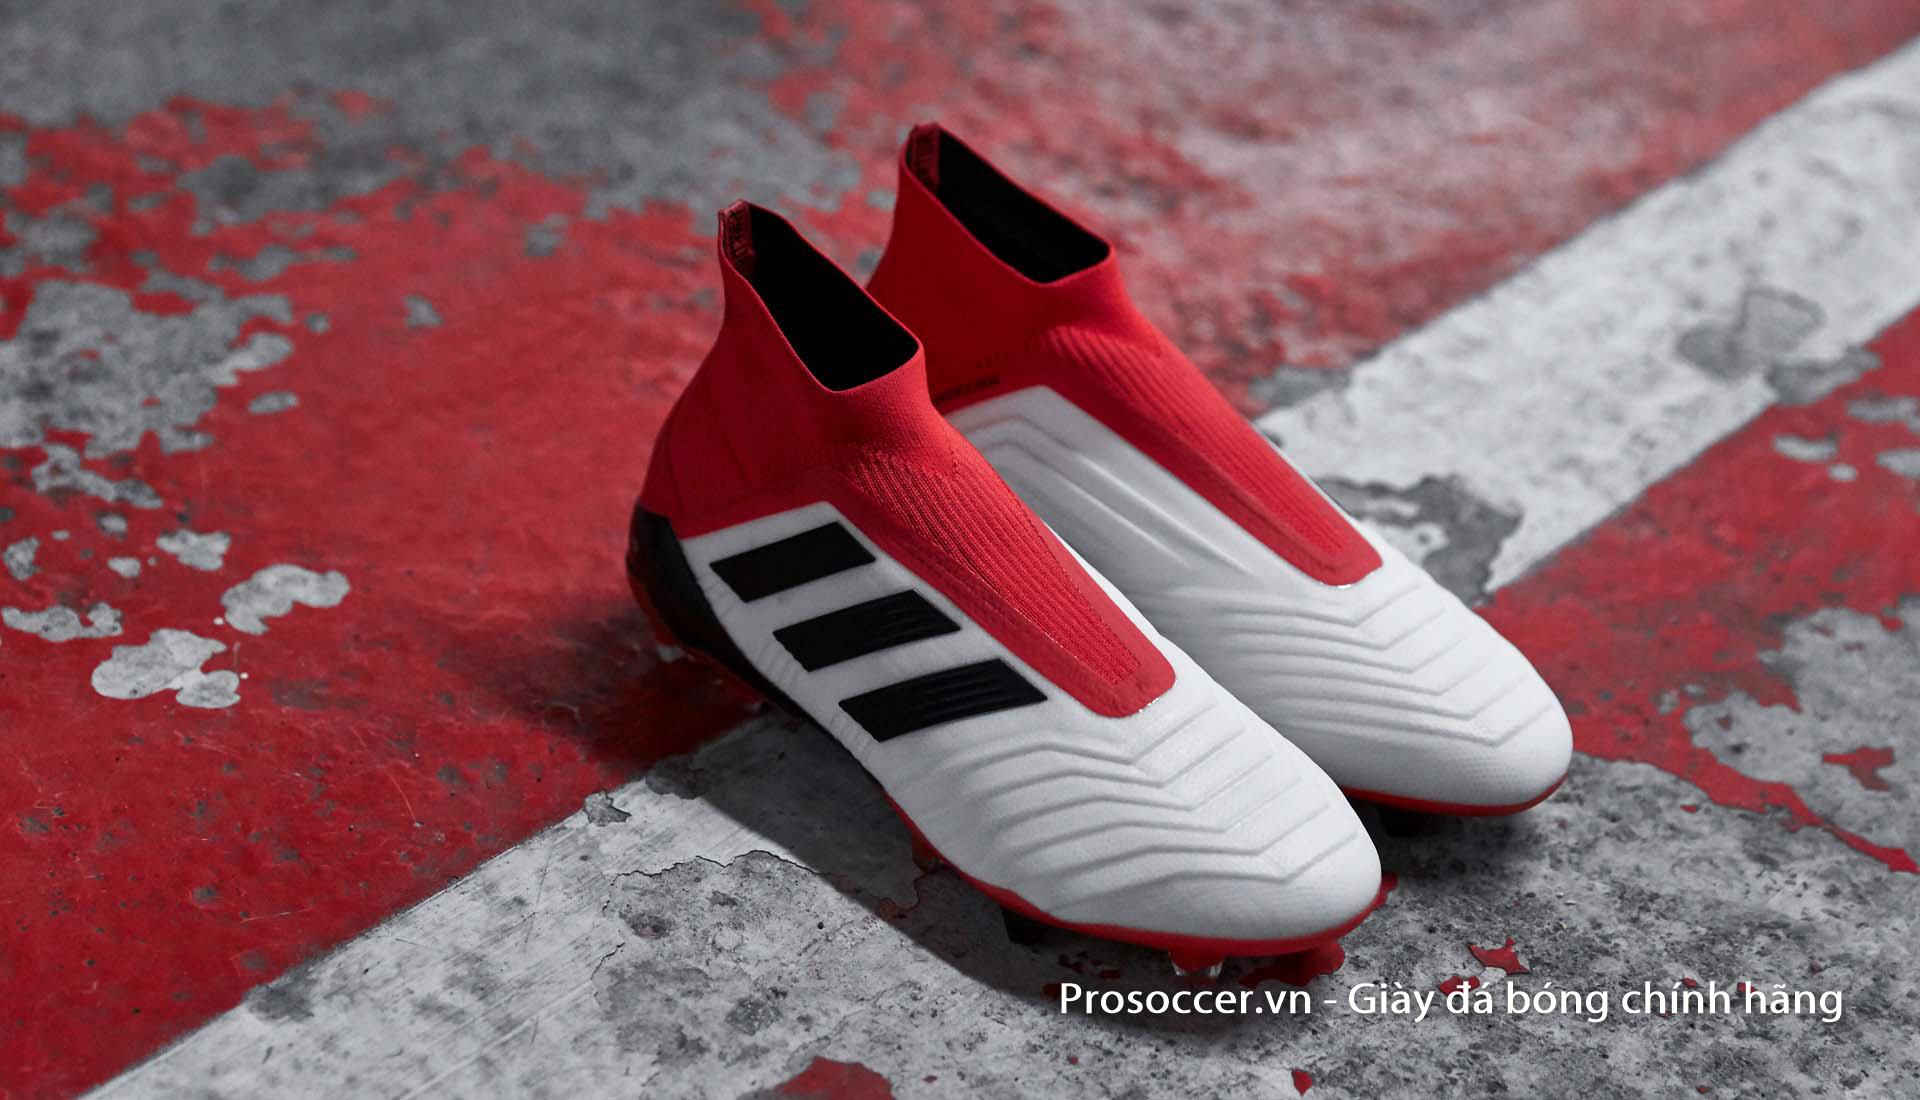 Mẫu giày đá bóng Adidas Predator 18+ đầu tiên được ra mắt với thiết kế không dây